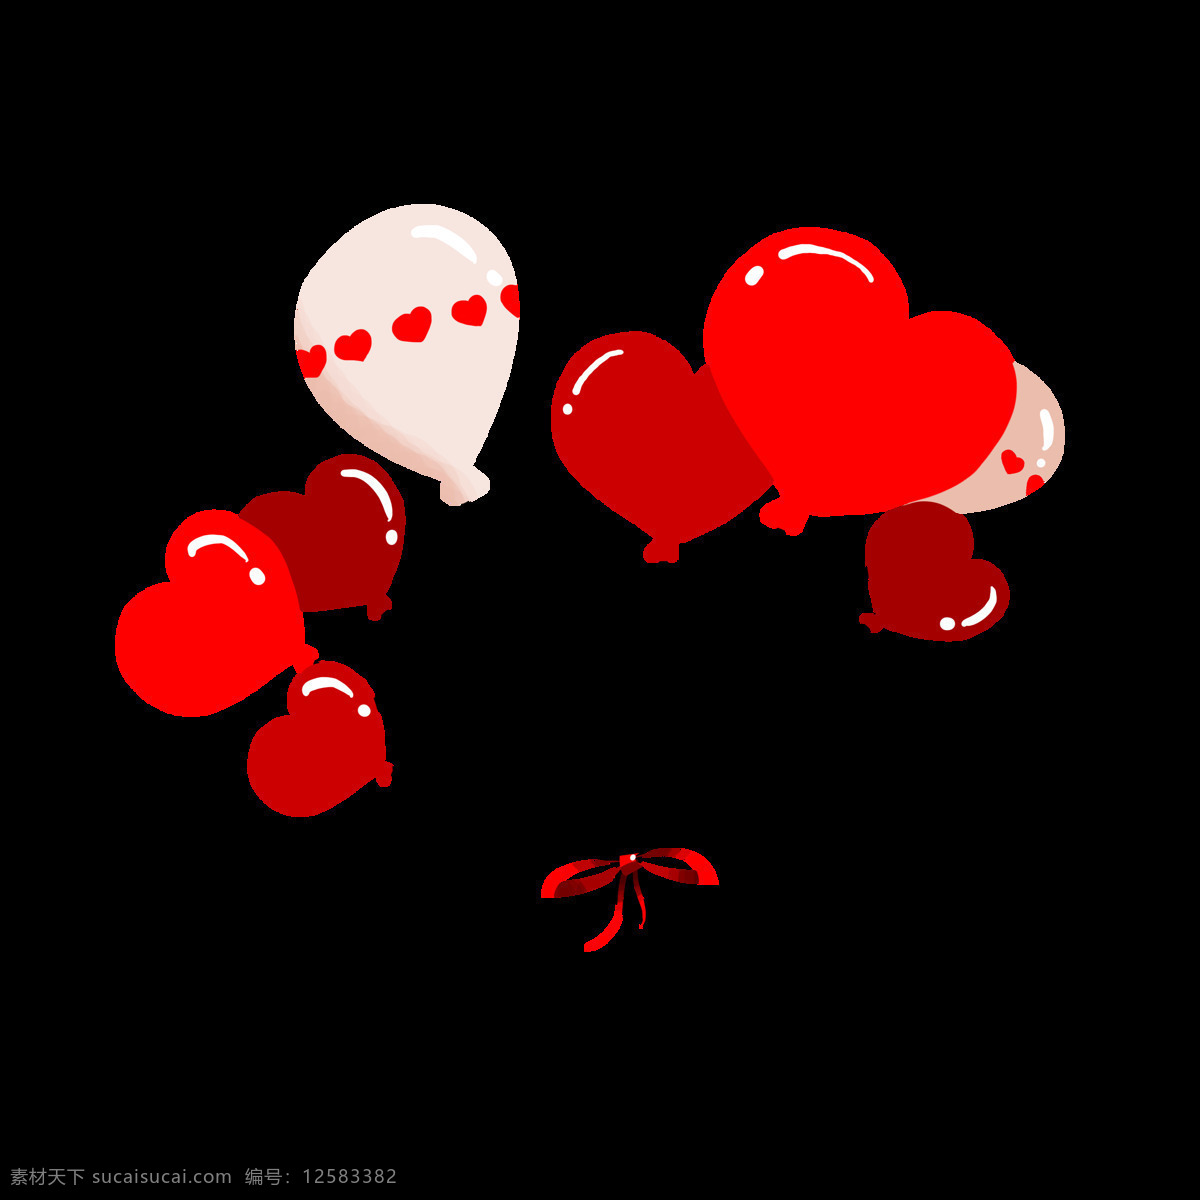 手绘 情人节 气球 插画 红色的气球 卡通插画 手绘包包插画 漂亮的气球 飘荡的气球 女士包包插画